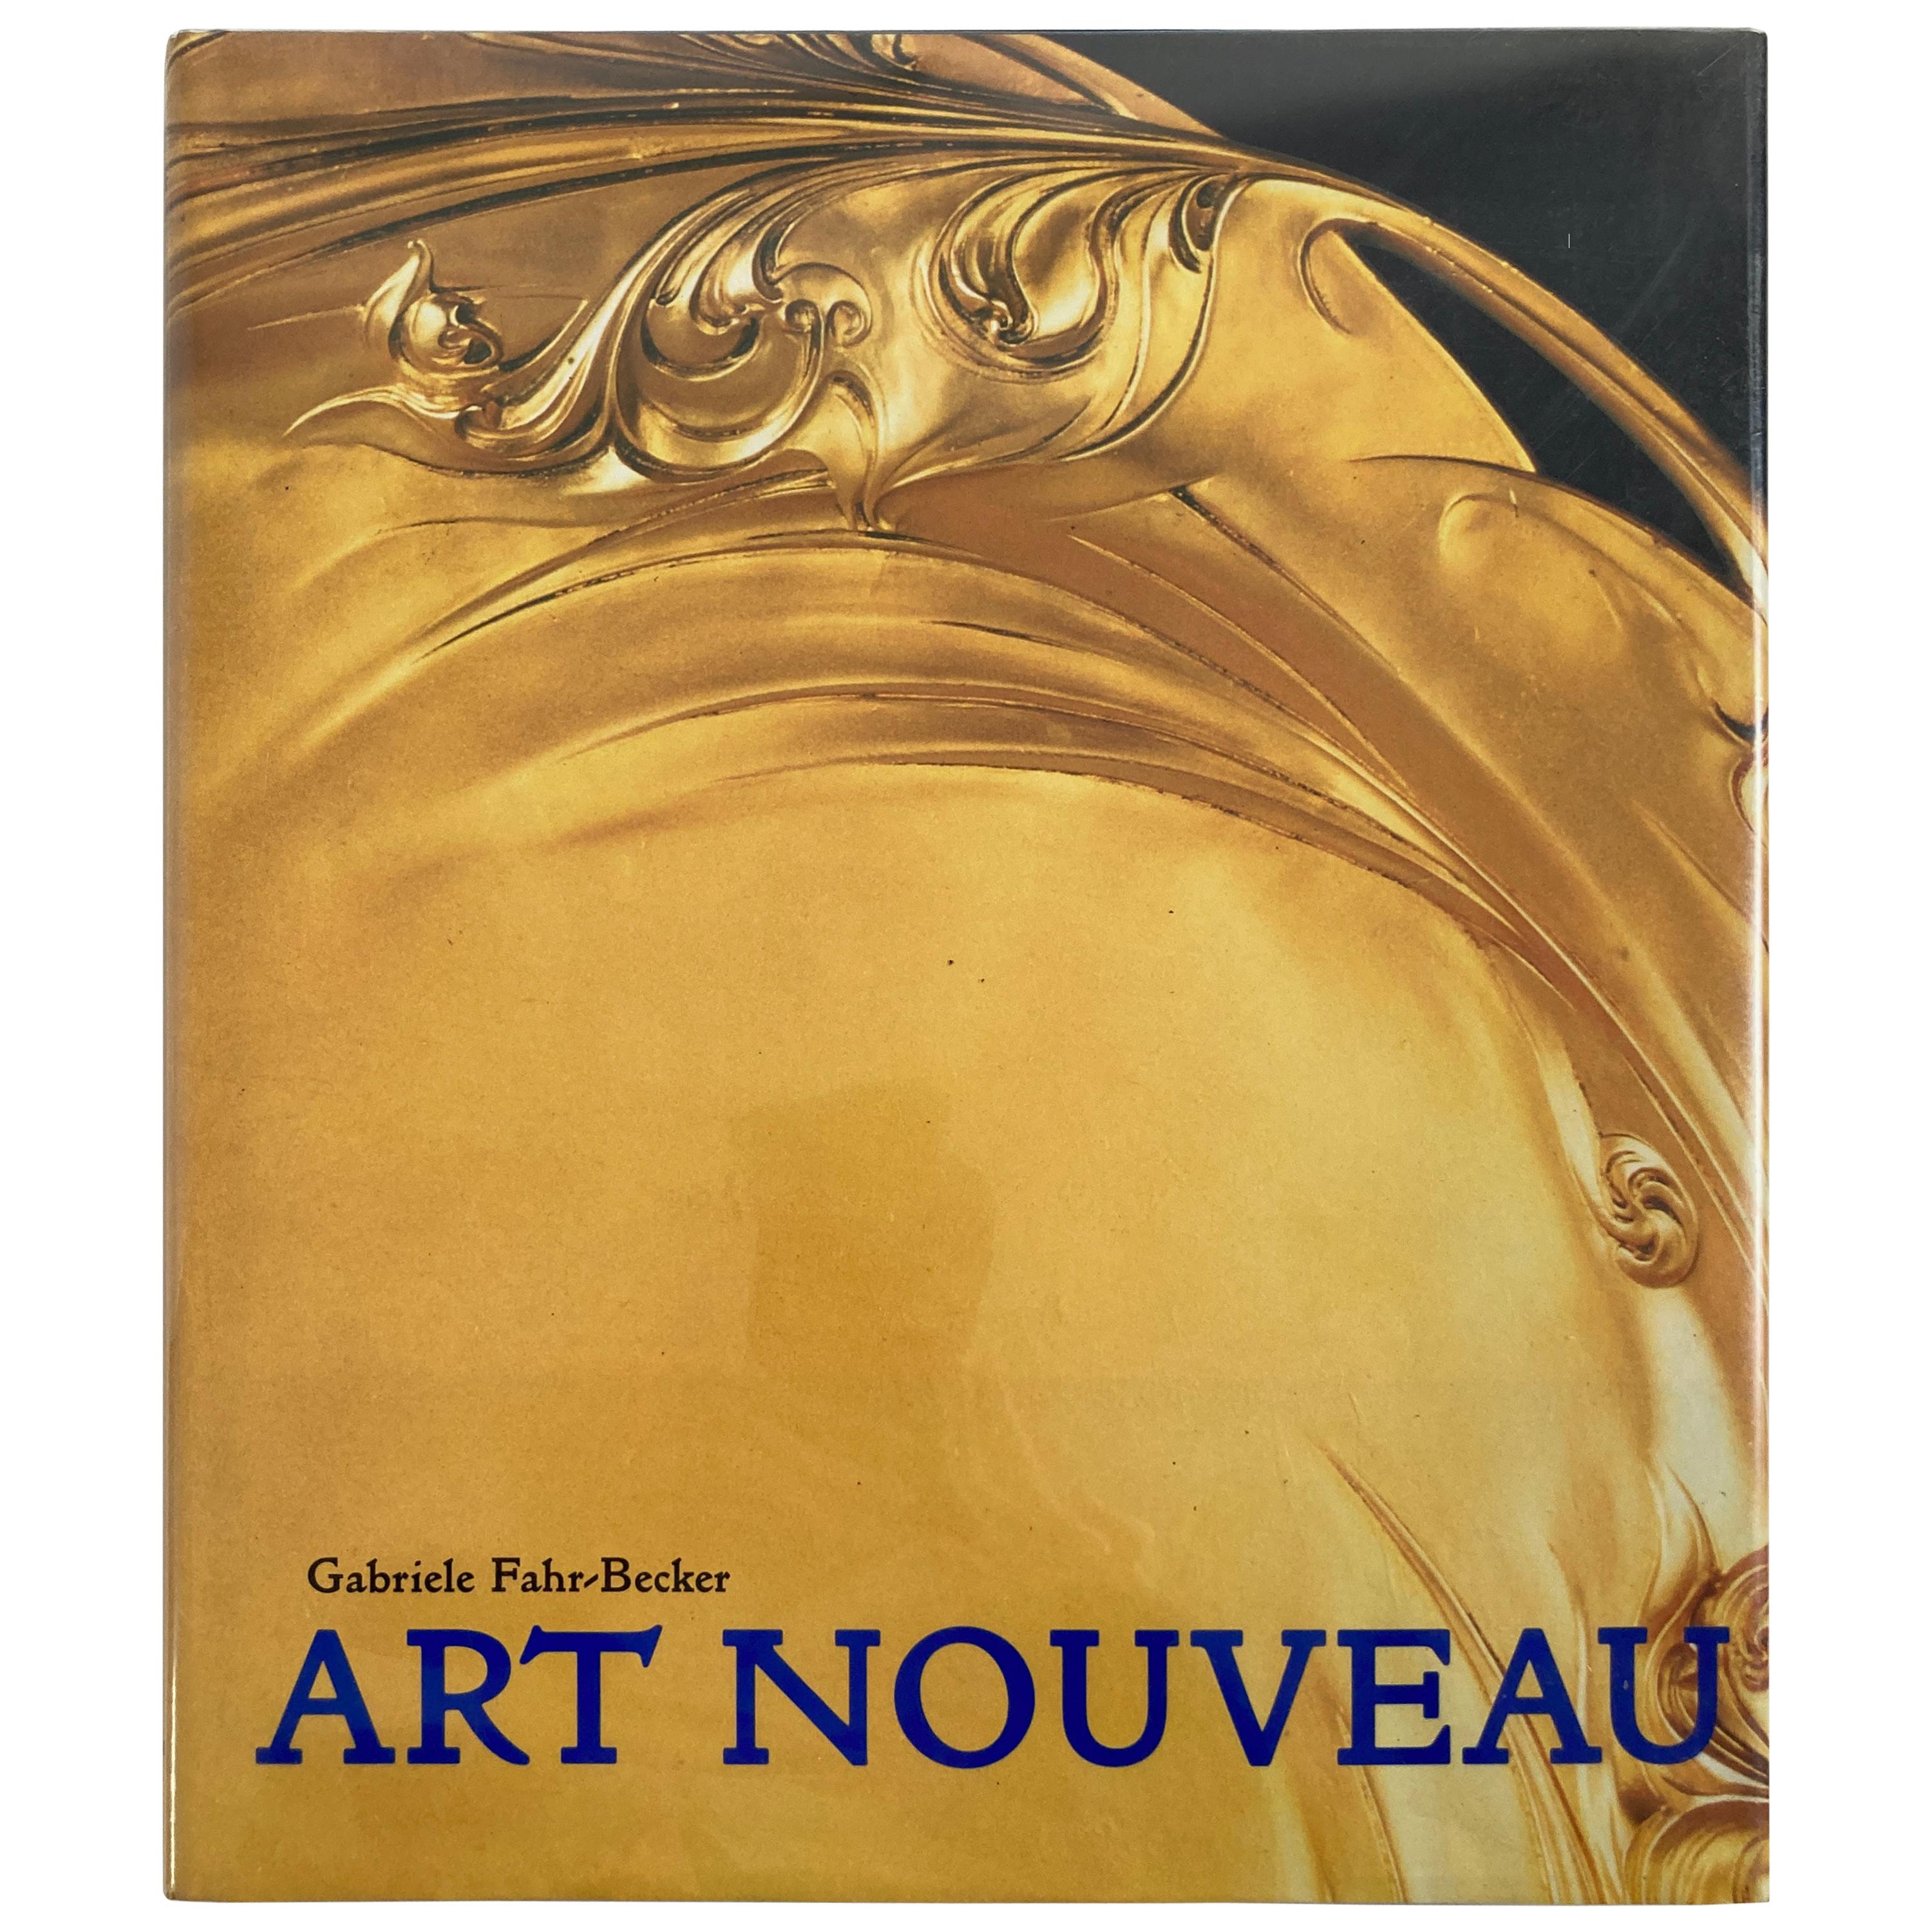 Livre Art Nouveau à couverture rigide et photo illustrée - Gabriele Fahr-Becker, auteur